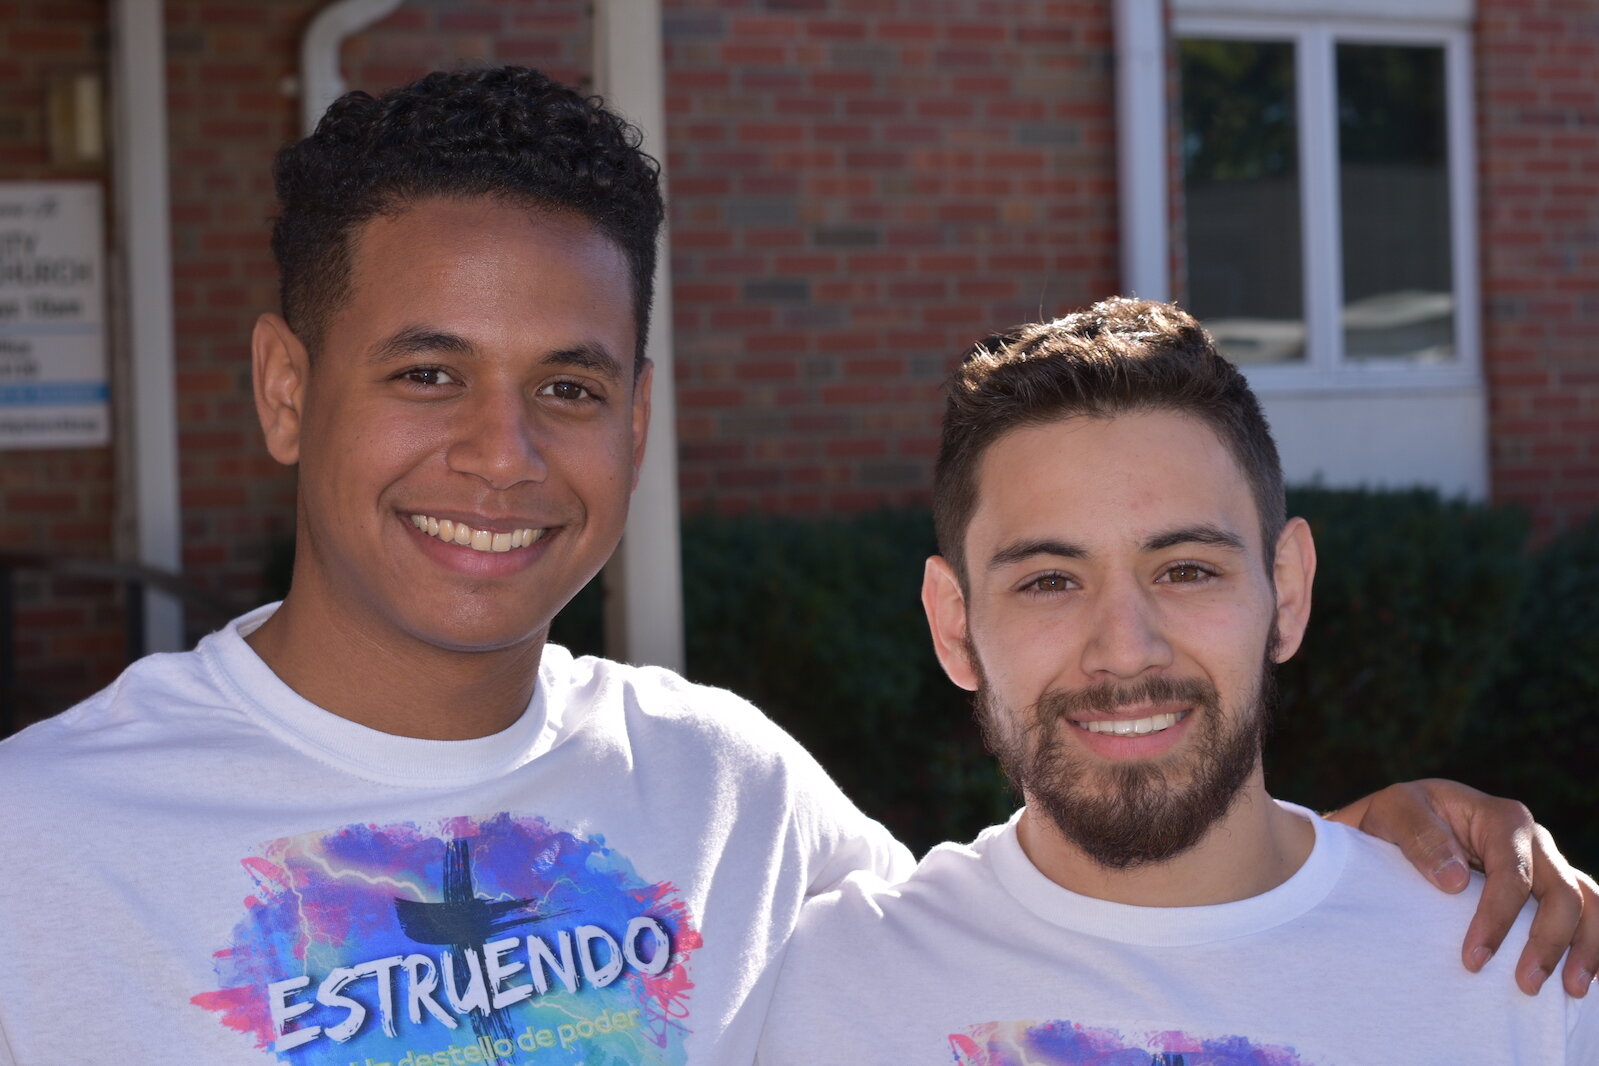 Jeffery Tavarez y Agustin Leal-Diaz co-fundadores de Estruendo, un grupo para ayudar a los estudiantes y a otros jóvenes que pudieran estar pensado en el suicido. 